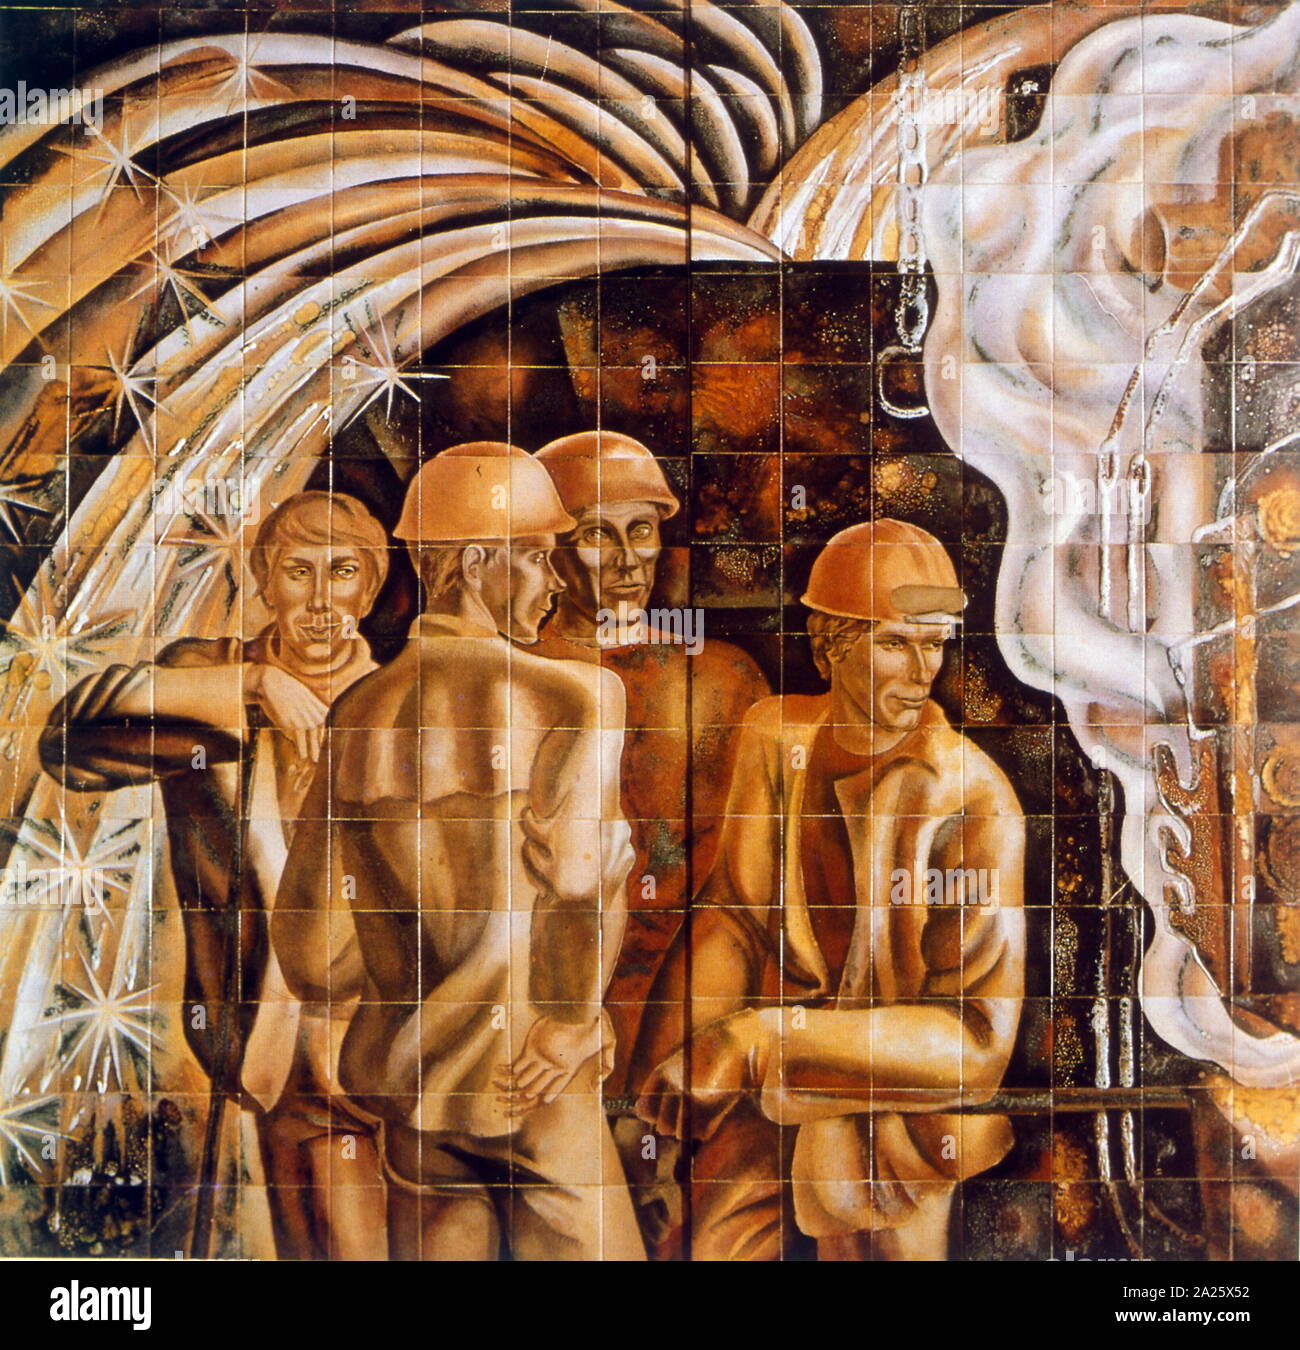 La jeune génération "murales" 1977, par Alexander Alyokhina (20e siècle artiste russe. Illustre groupe de travailleurs de l'industrie soviétique Banque D'Images